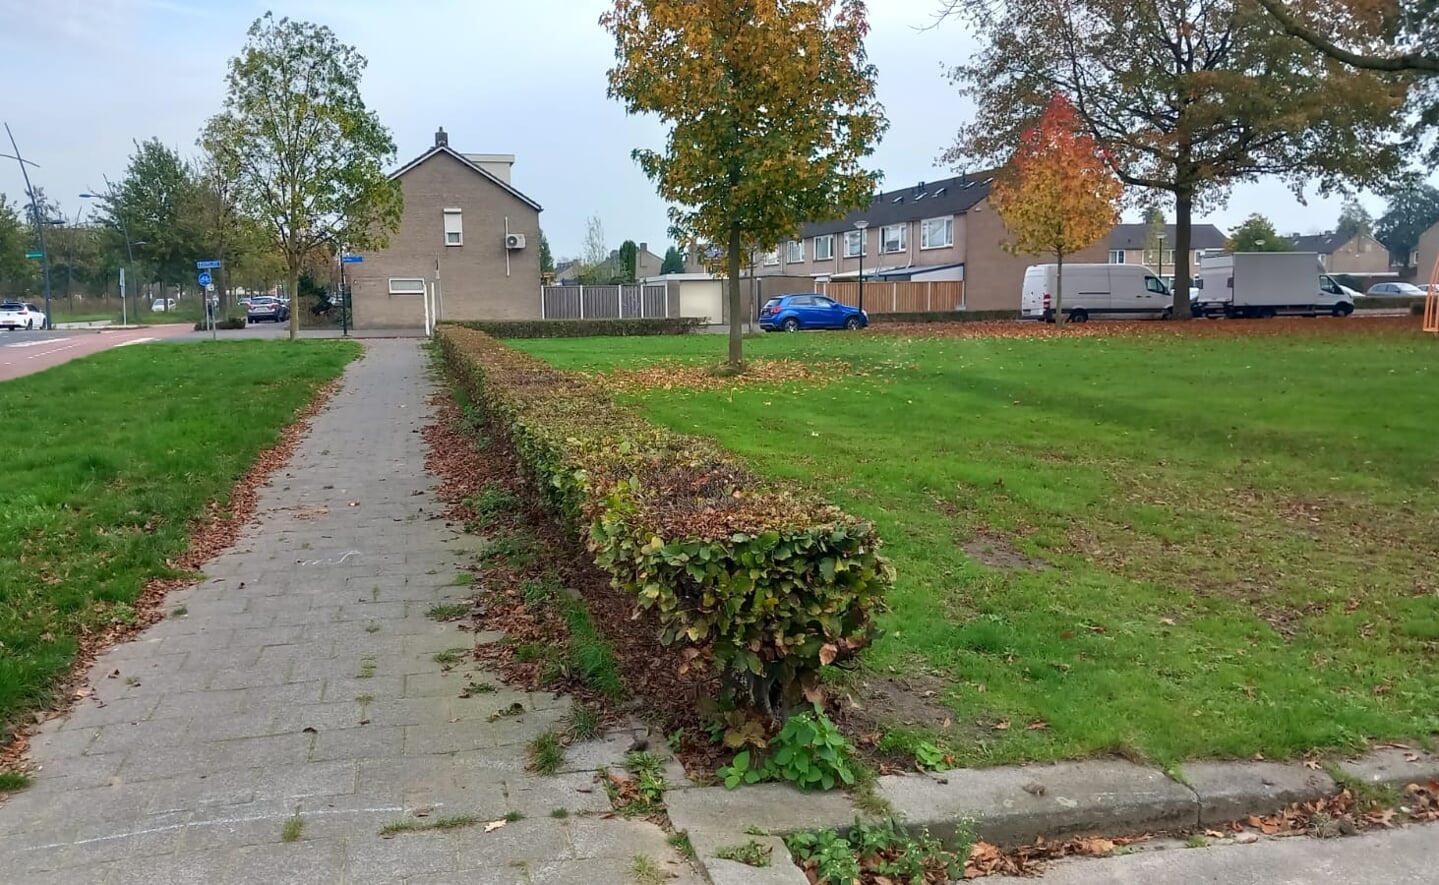 Enkele weken geleden presenteerden de gemeente Boxtel en woonstichting Joost een plan om op dit speelveldje tussen Hoogheem en het Pastoor Van Besouwplein twaalf flexwoningen te bouwen.